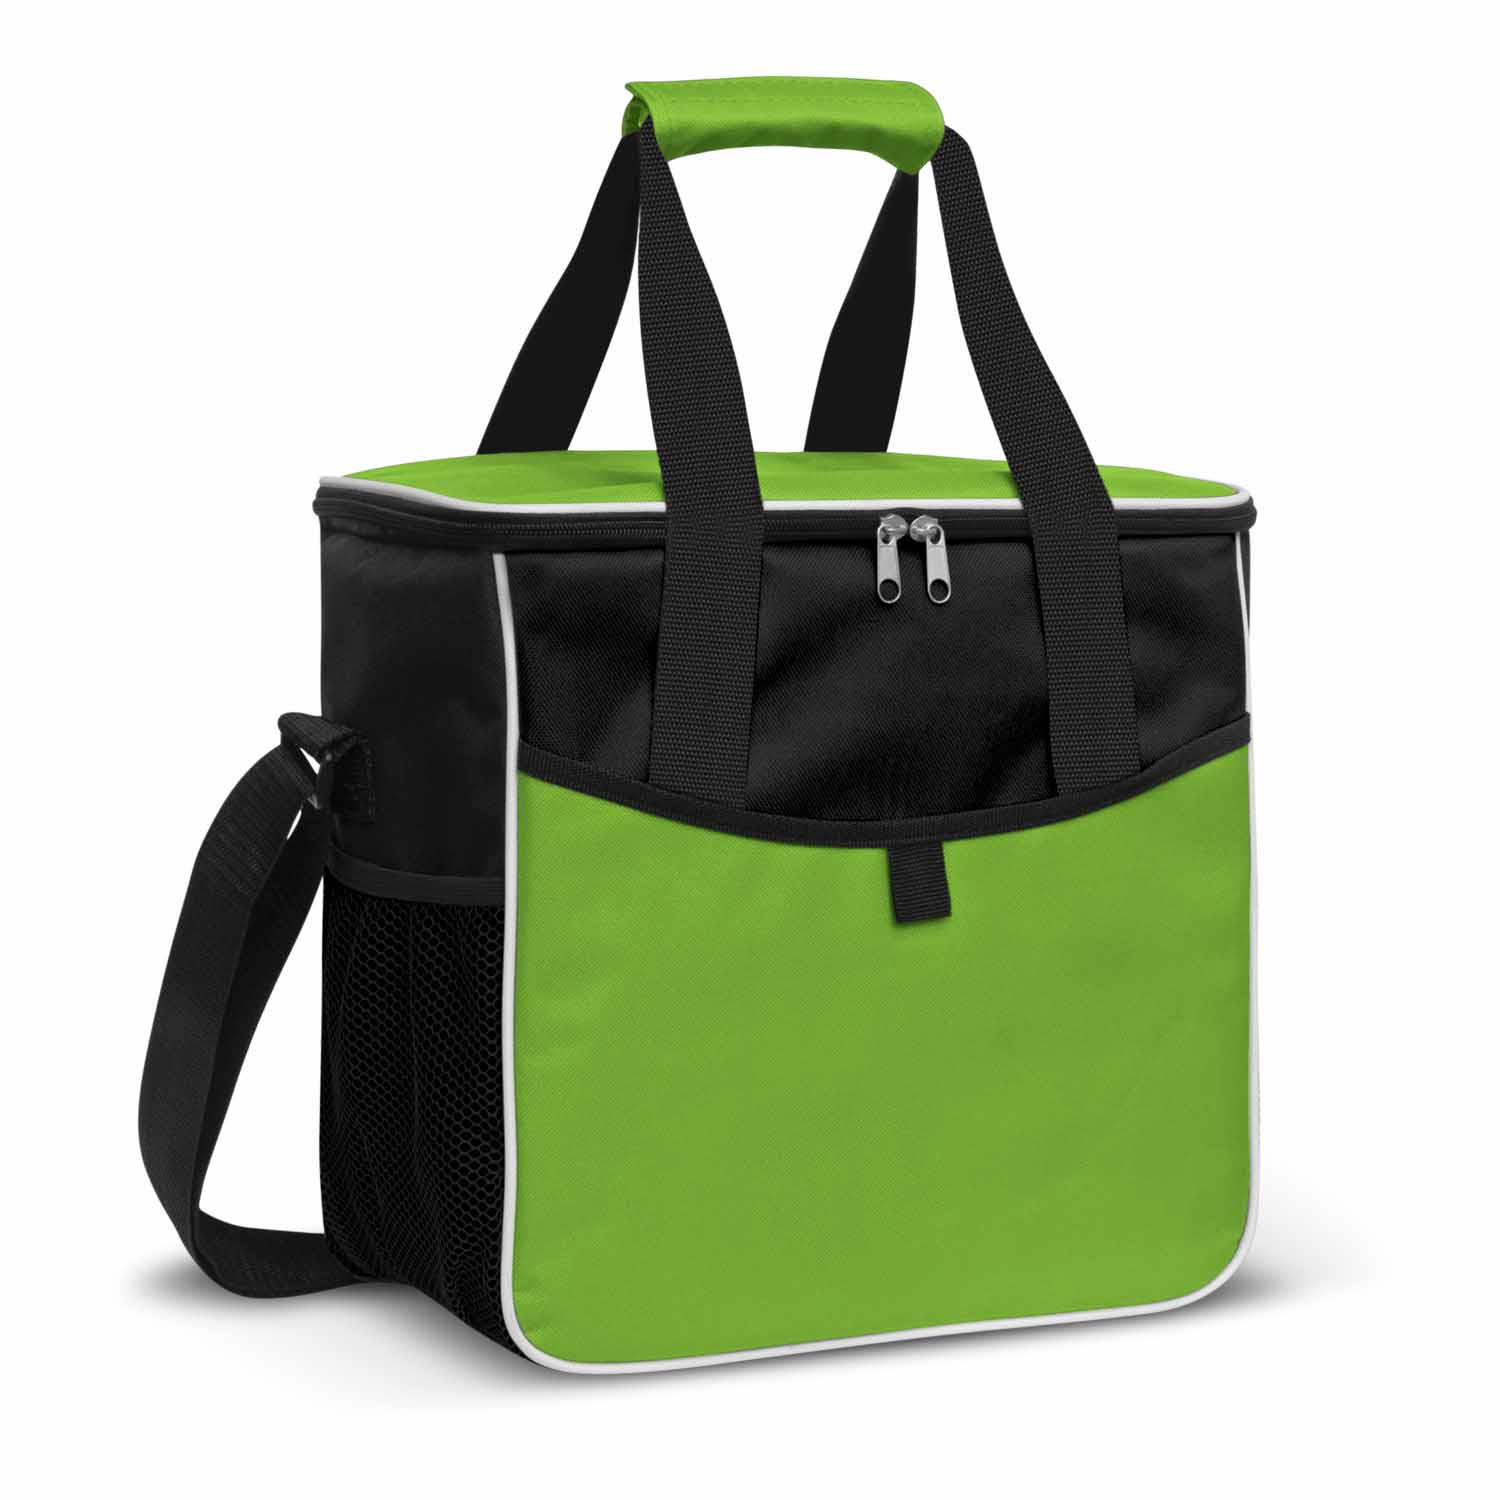 Buy Online Green Nordic Cooler Bags in Australia